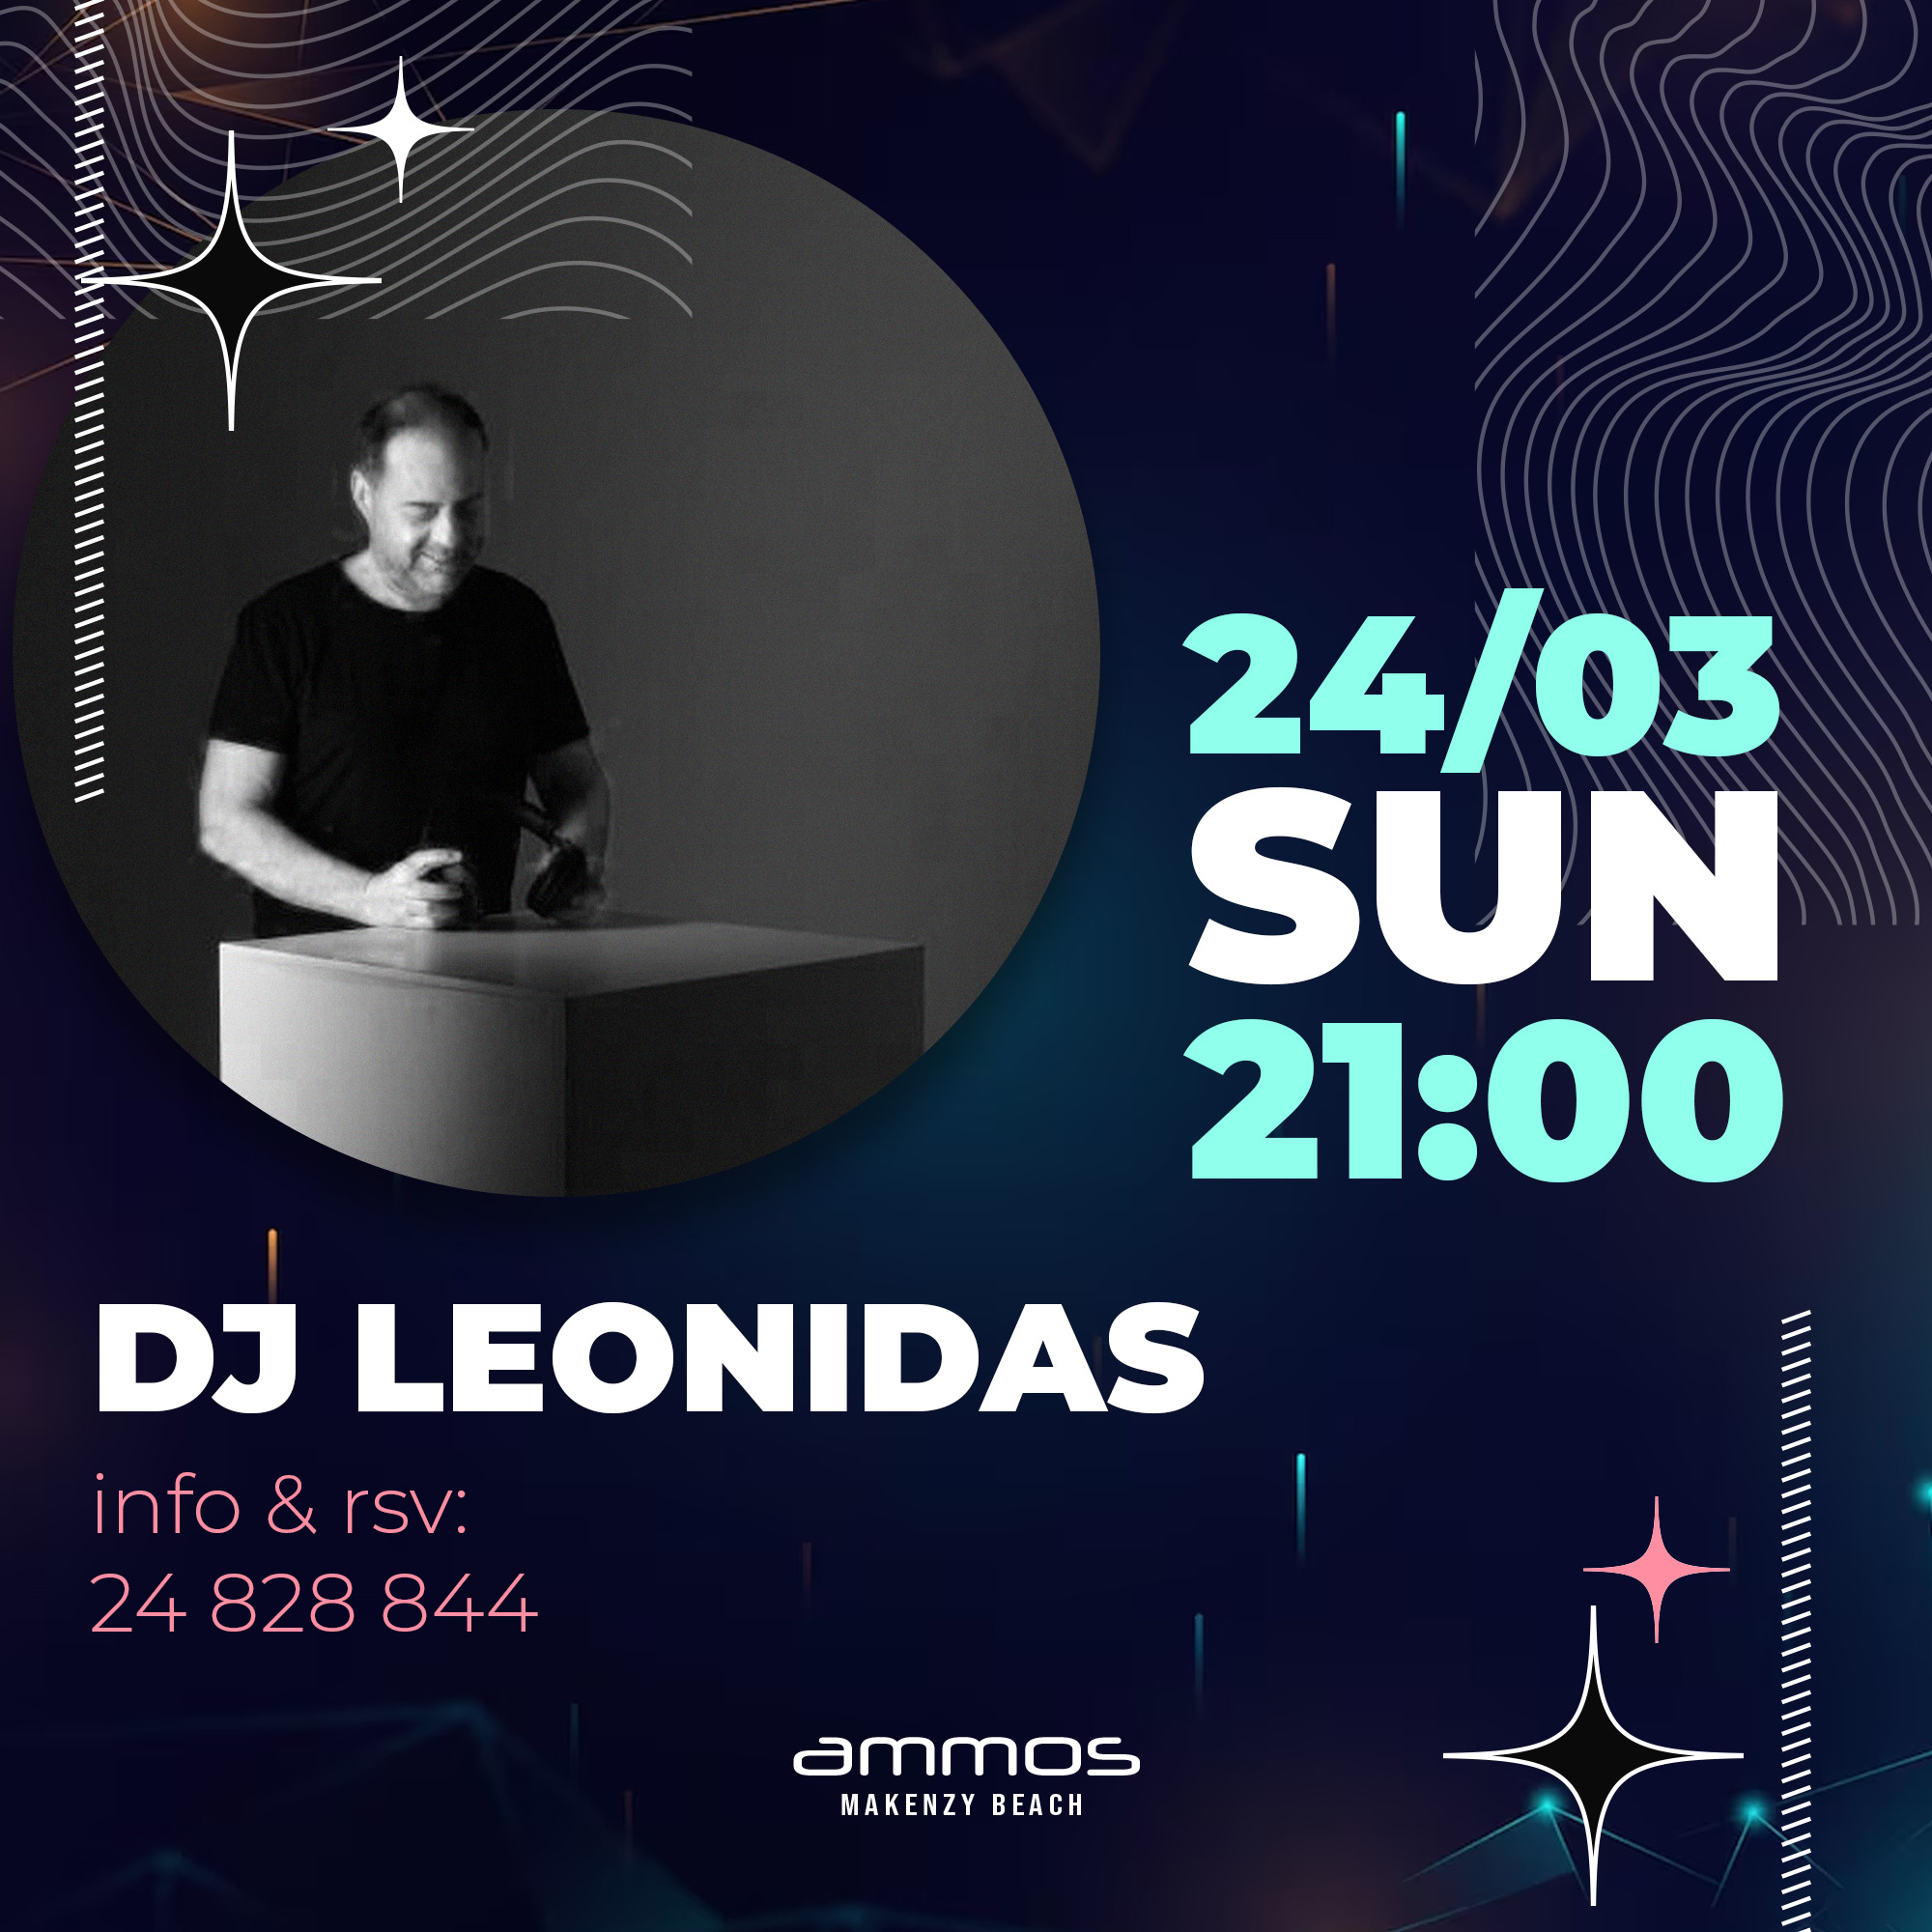 DJ Leonidas